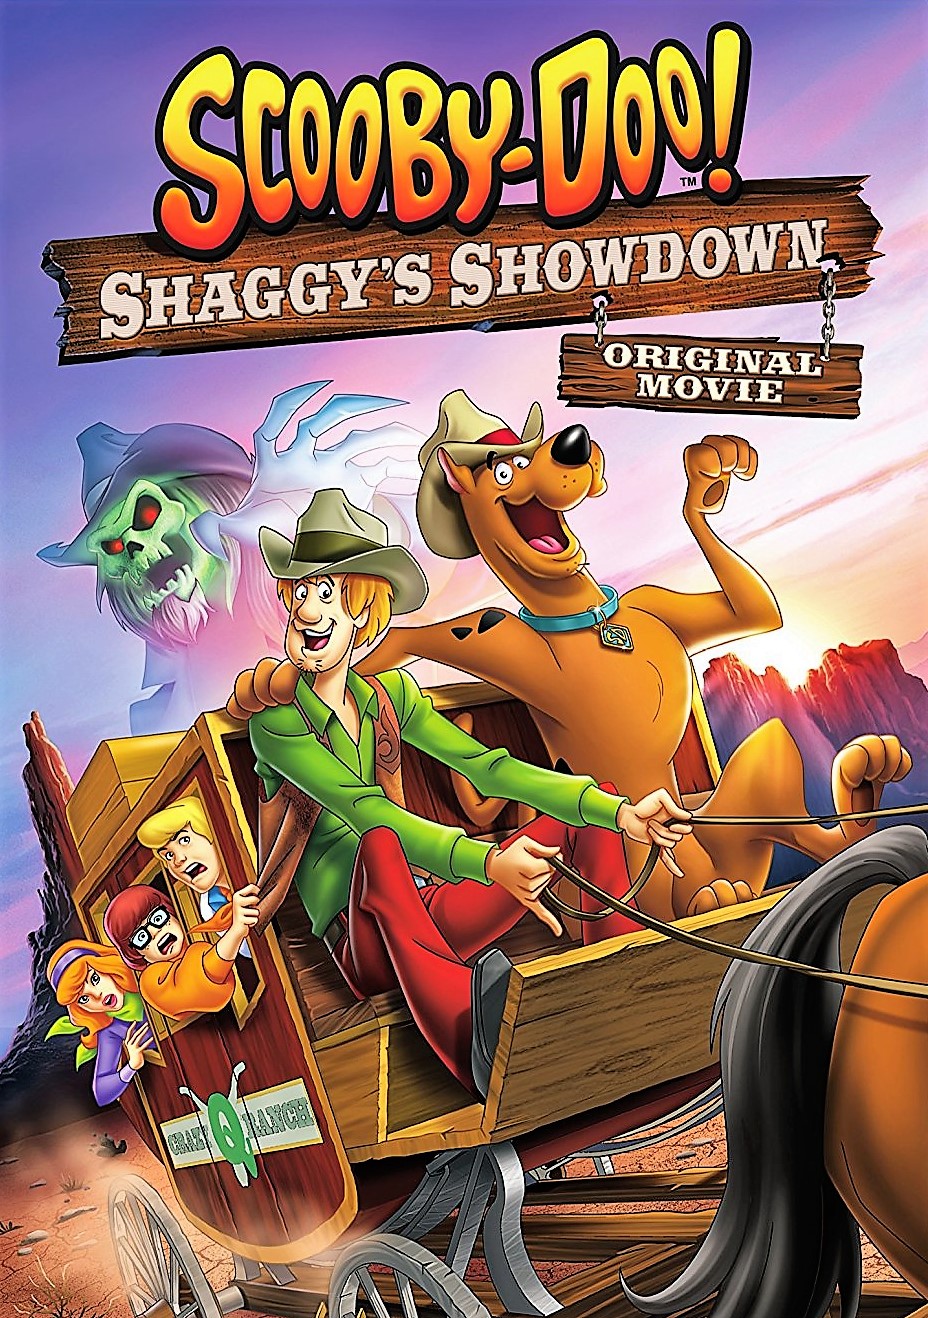 دانلود انیمیشن Scooby-Doo! Shaggy’s Showdown 2017 اسکو بی دوو! مسابقه شگی با دوبله فارسی